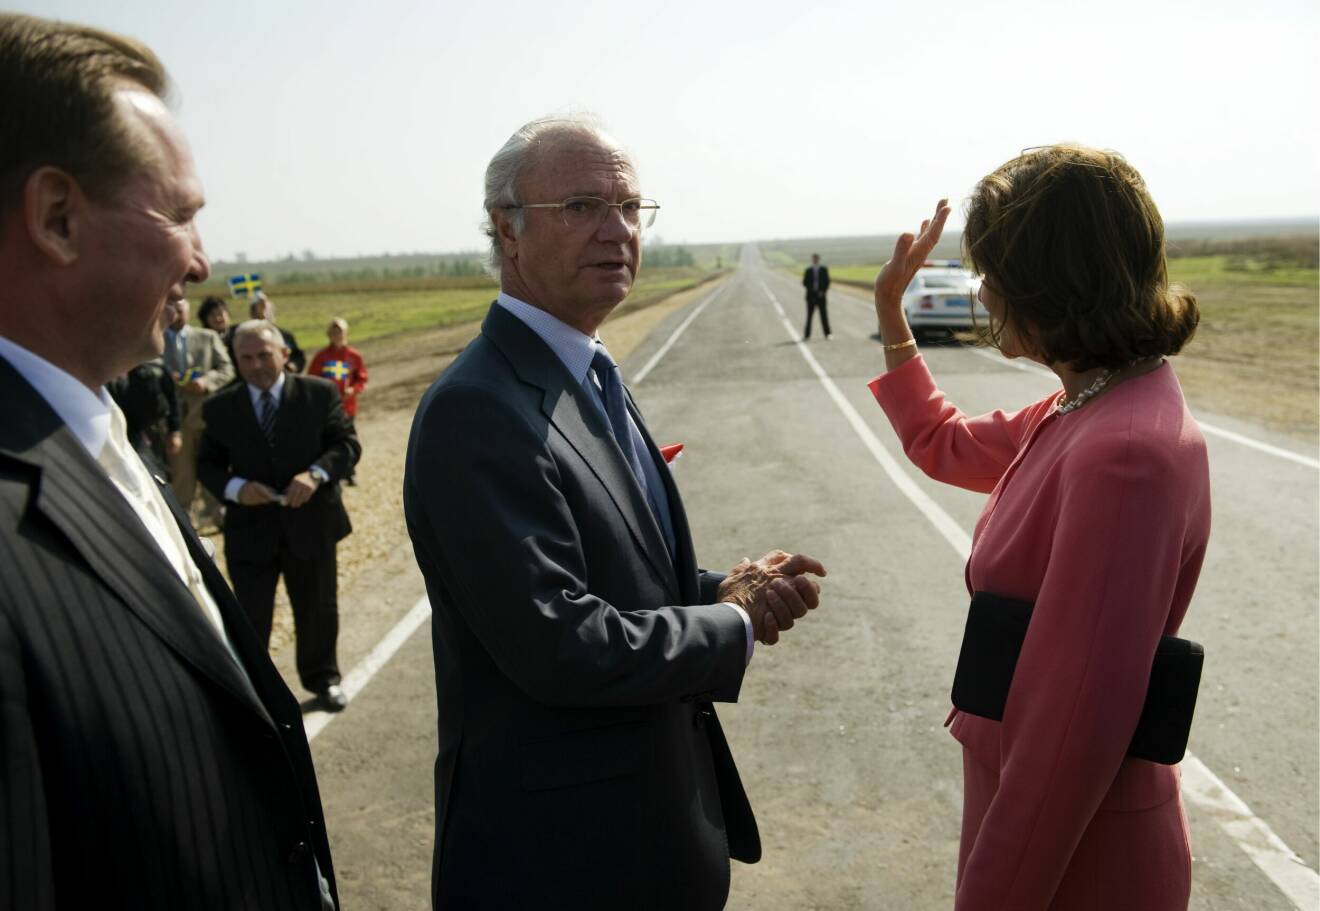 Kungen och drottningen inviger en väg i Gammalsvenskby i Ukraina 2008